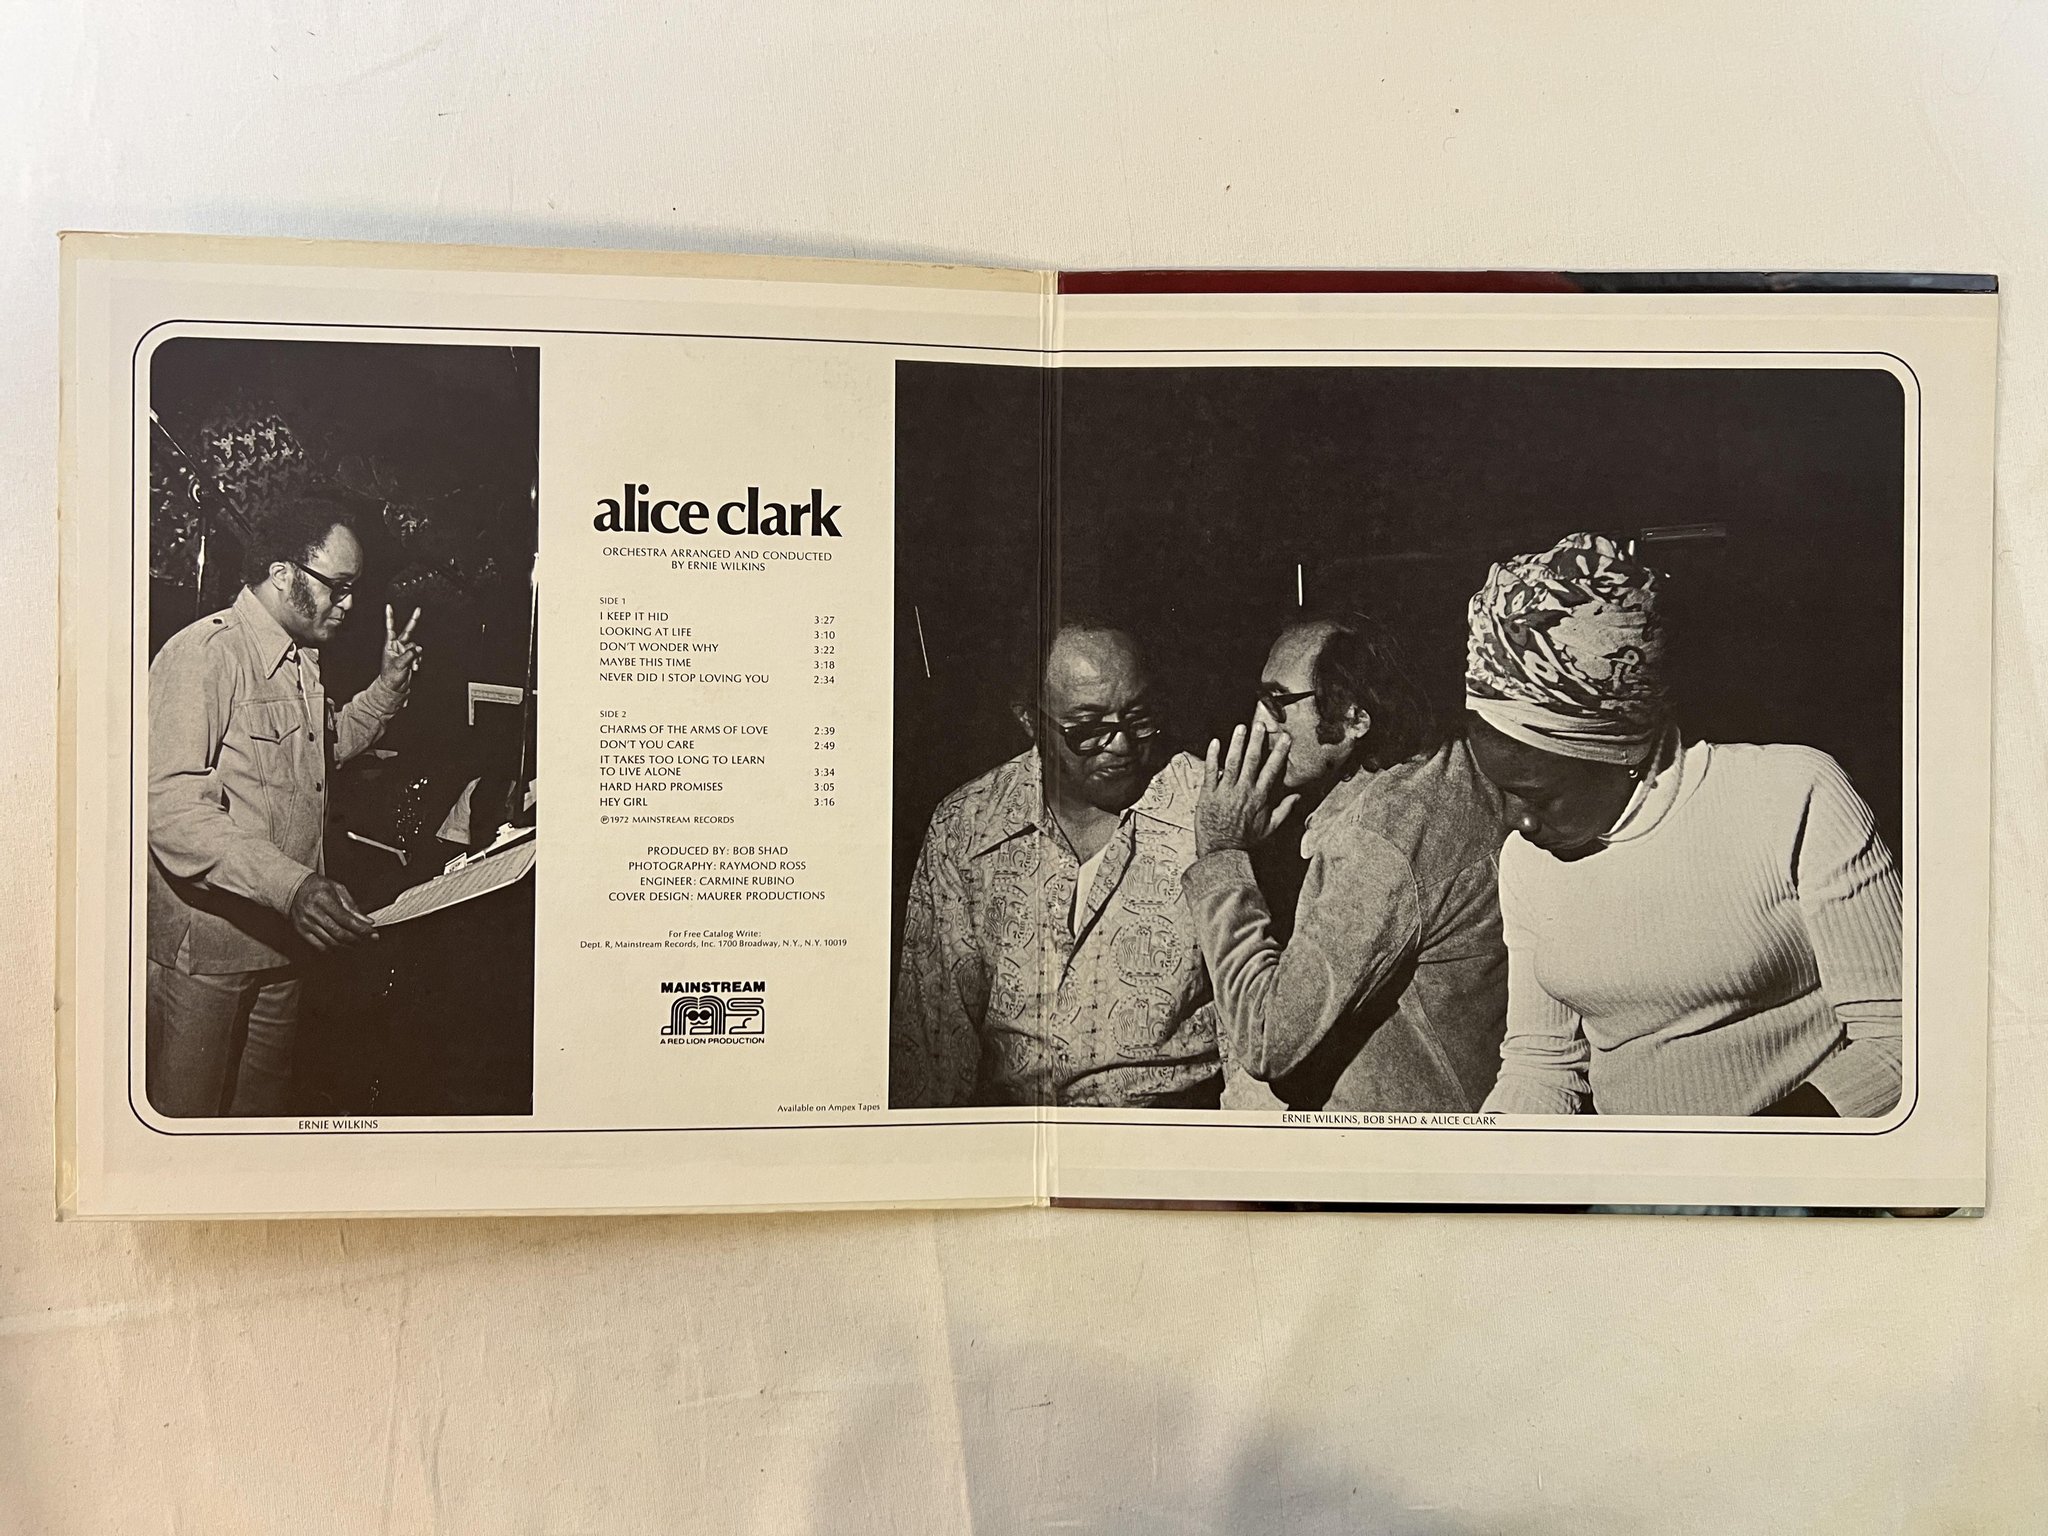 Omslagsbild för skivan ALICE CLARK s/t LP -72 US MAINSTREAM MRL 362 ** KILLER SOUL ALBUM **